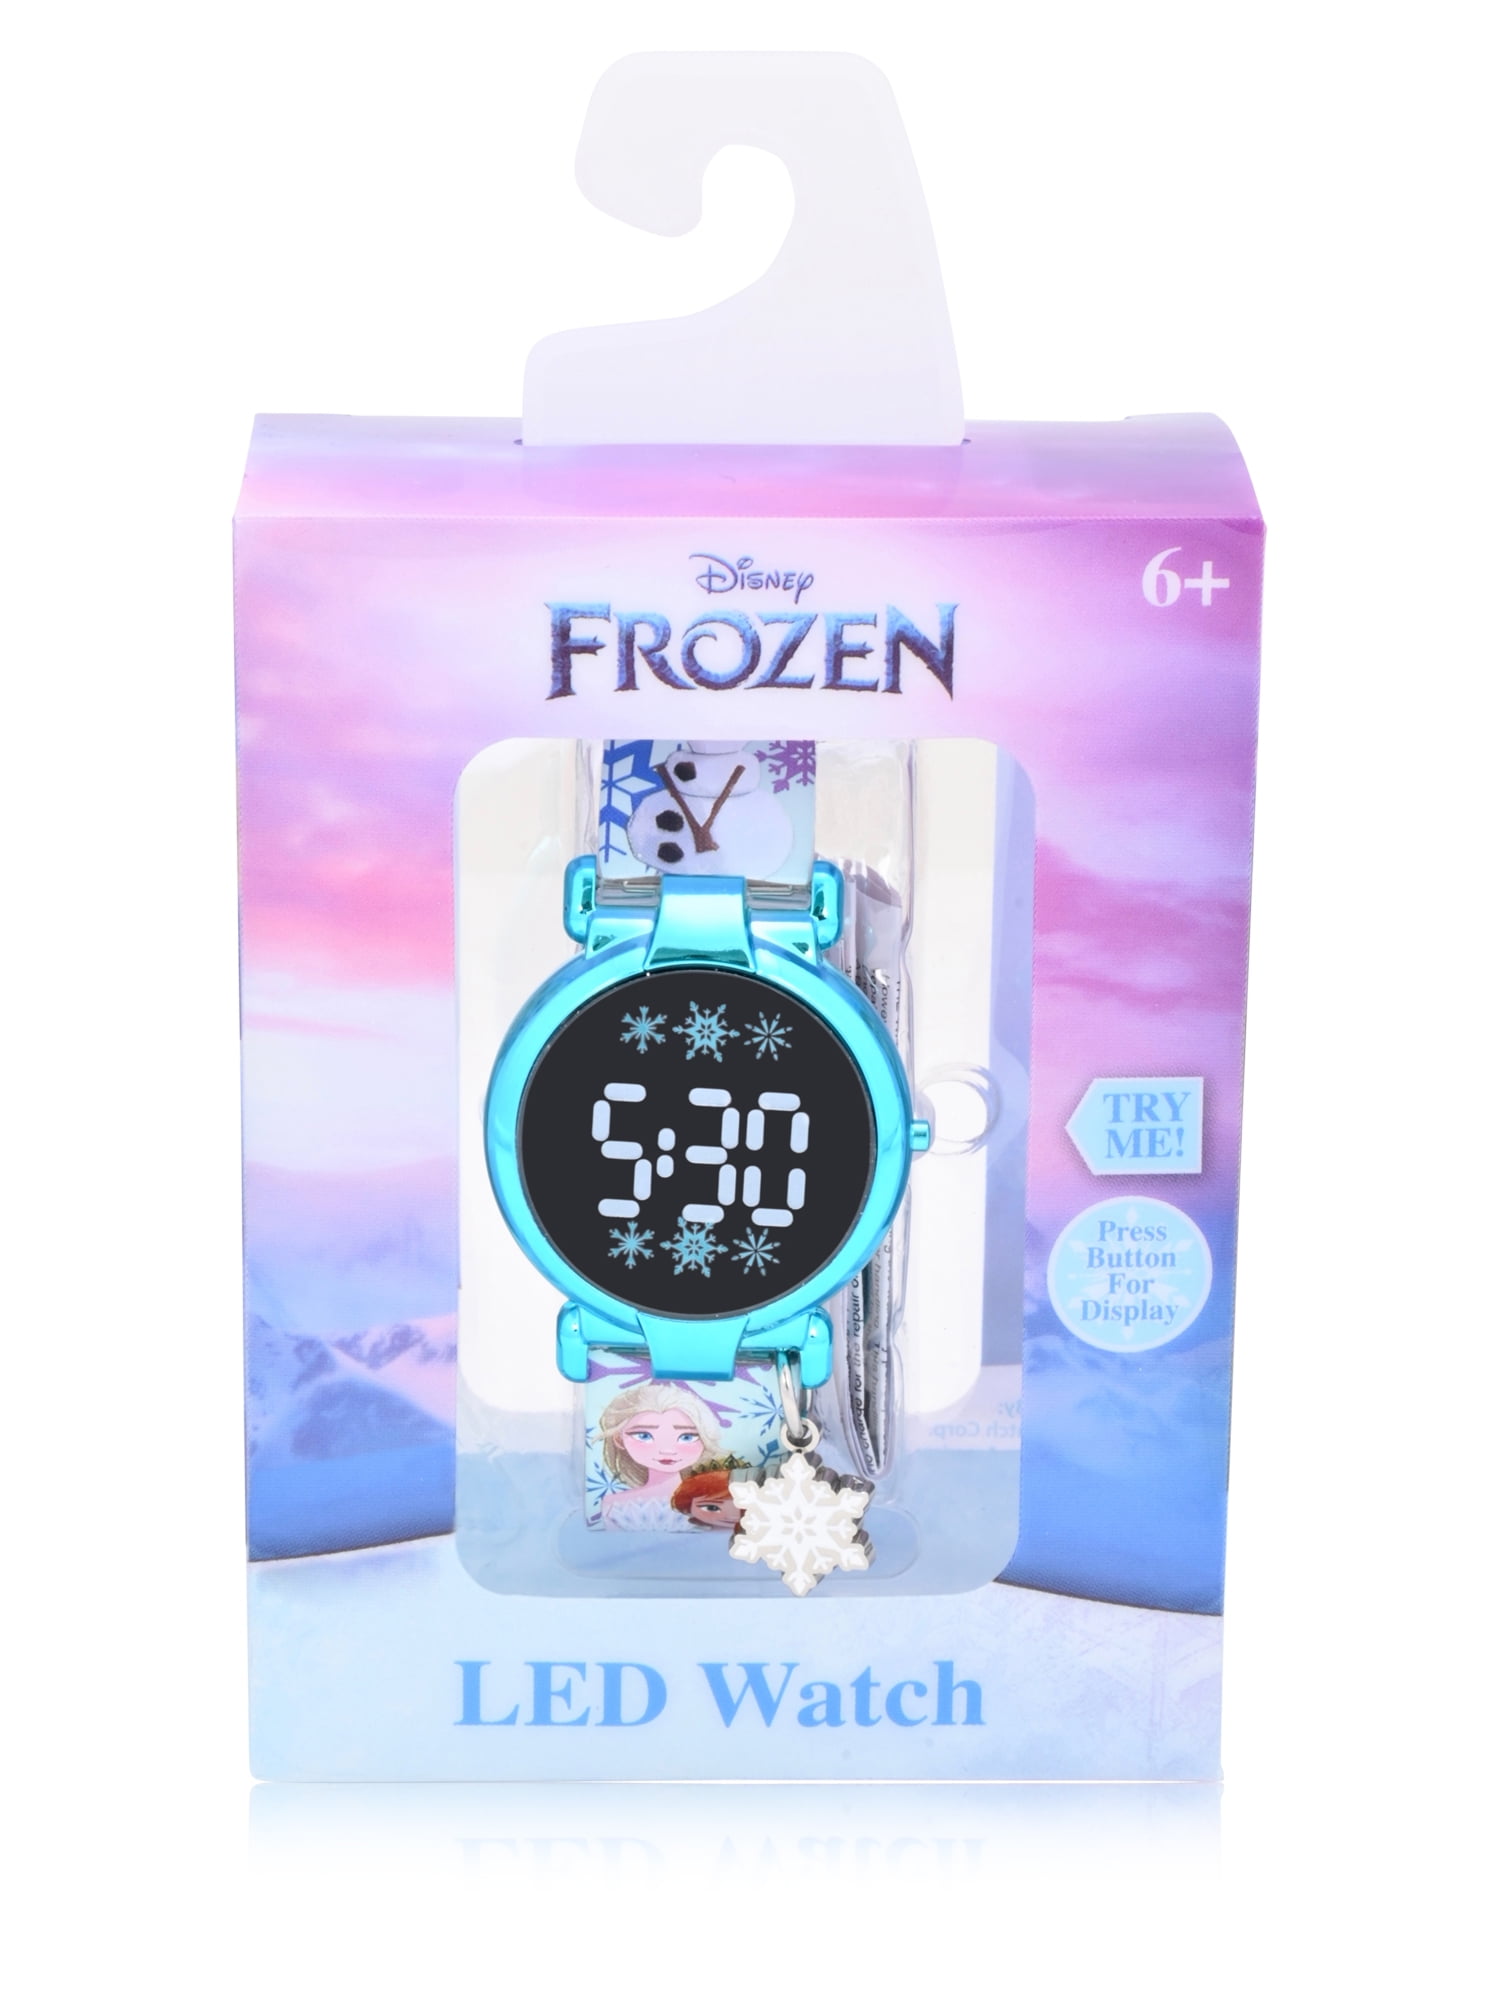 Appal terugtrekken roddel Disney Frozen II Unisex Children's LCD Watch with Dangling Snow Flake Charm  - FZN4803WM - Walmart.com